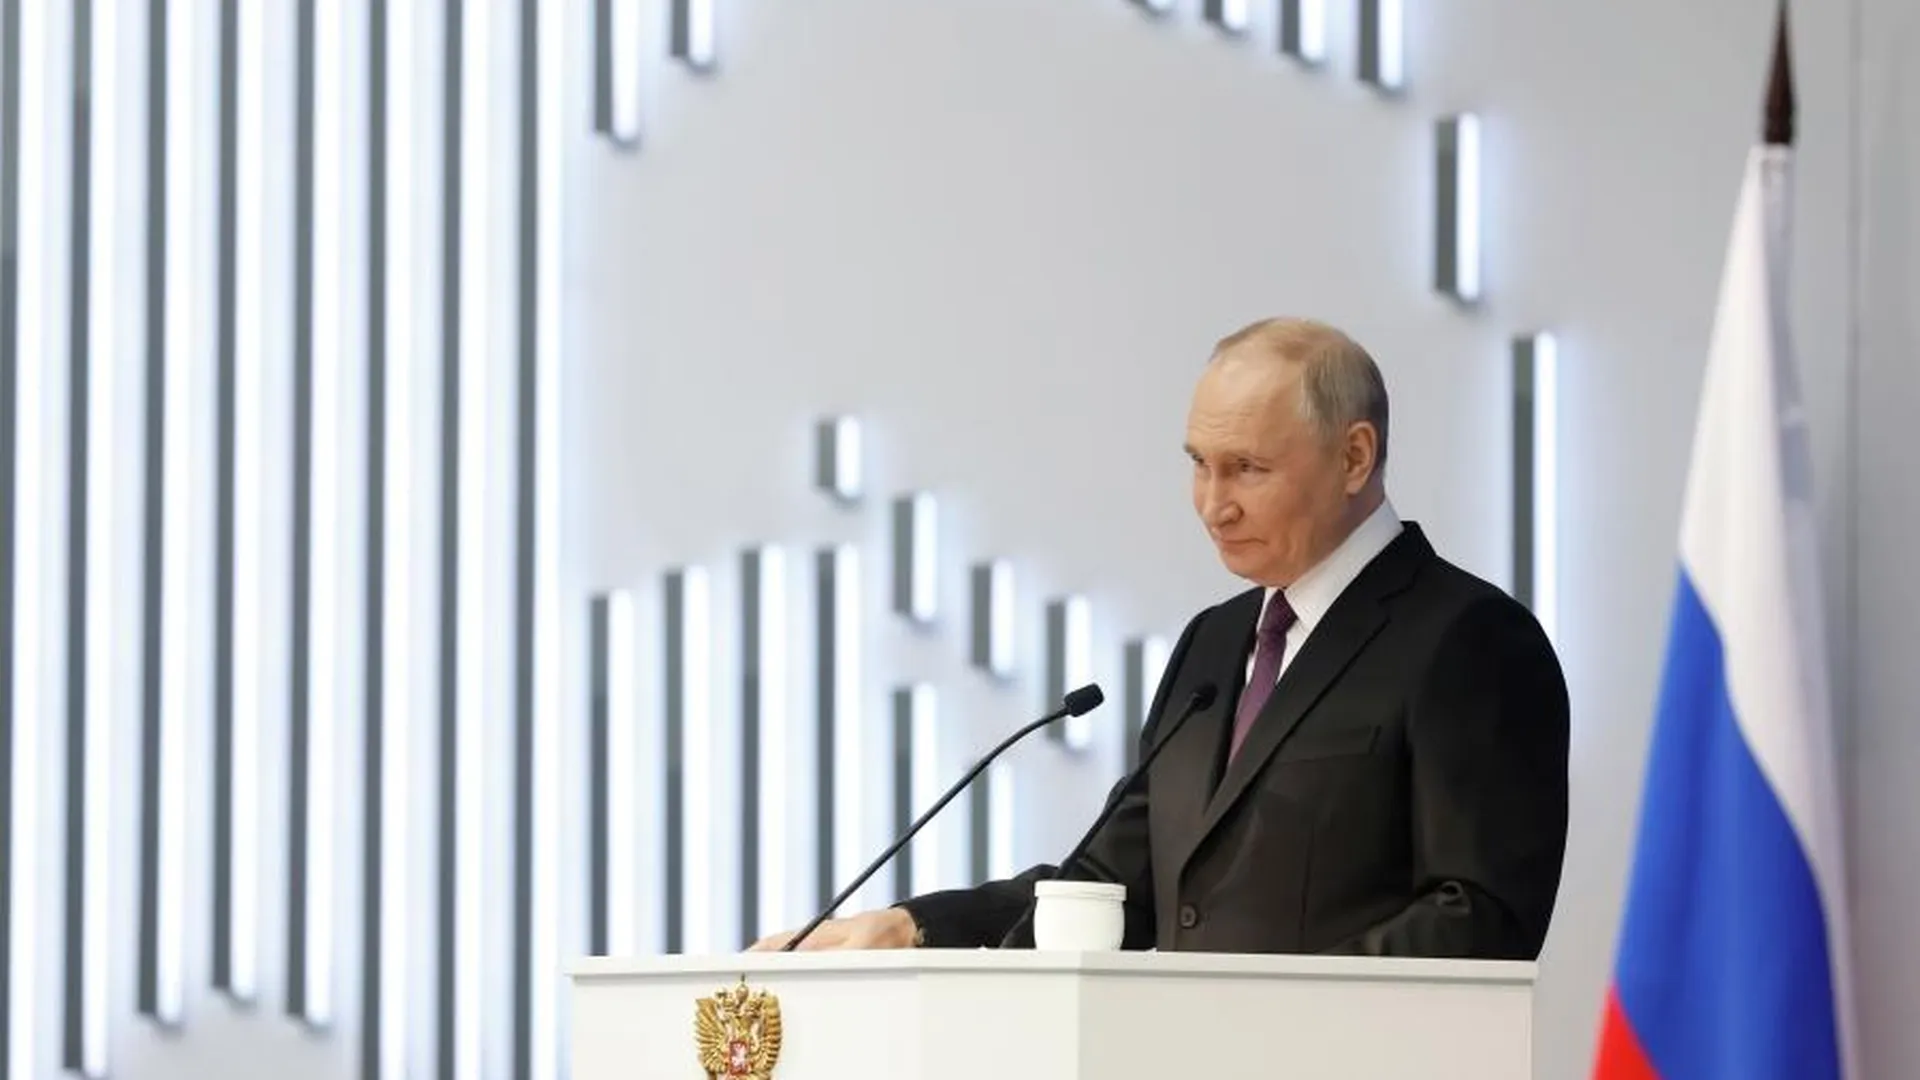 Эксперт Данилин: послание Путина носило грандиозный эмоциональный накал